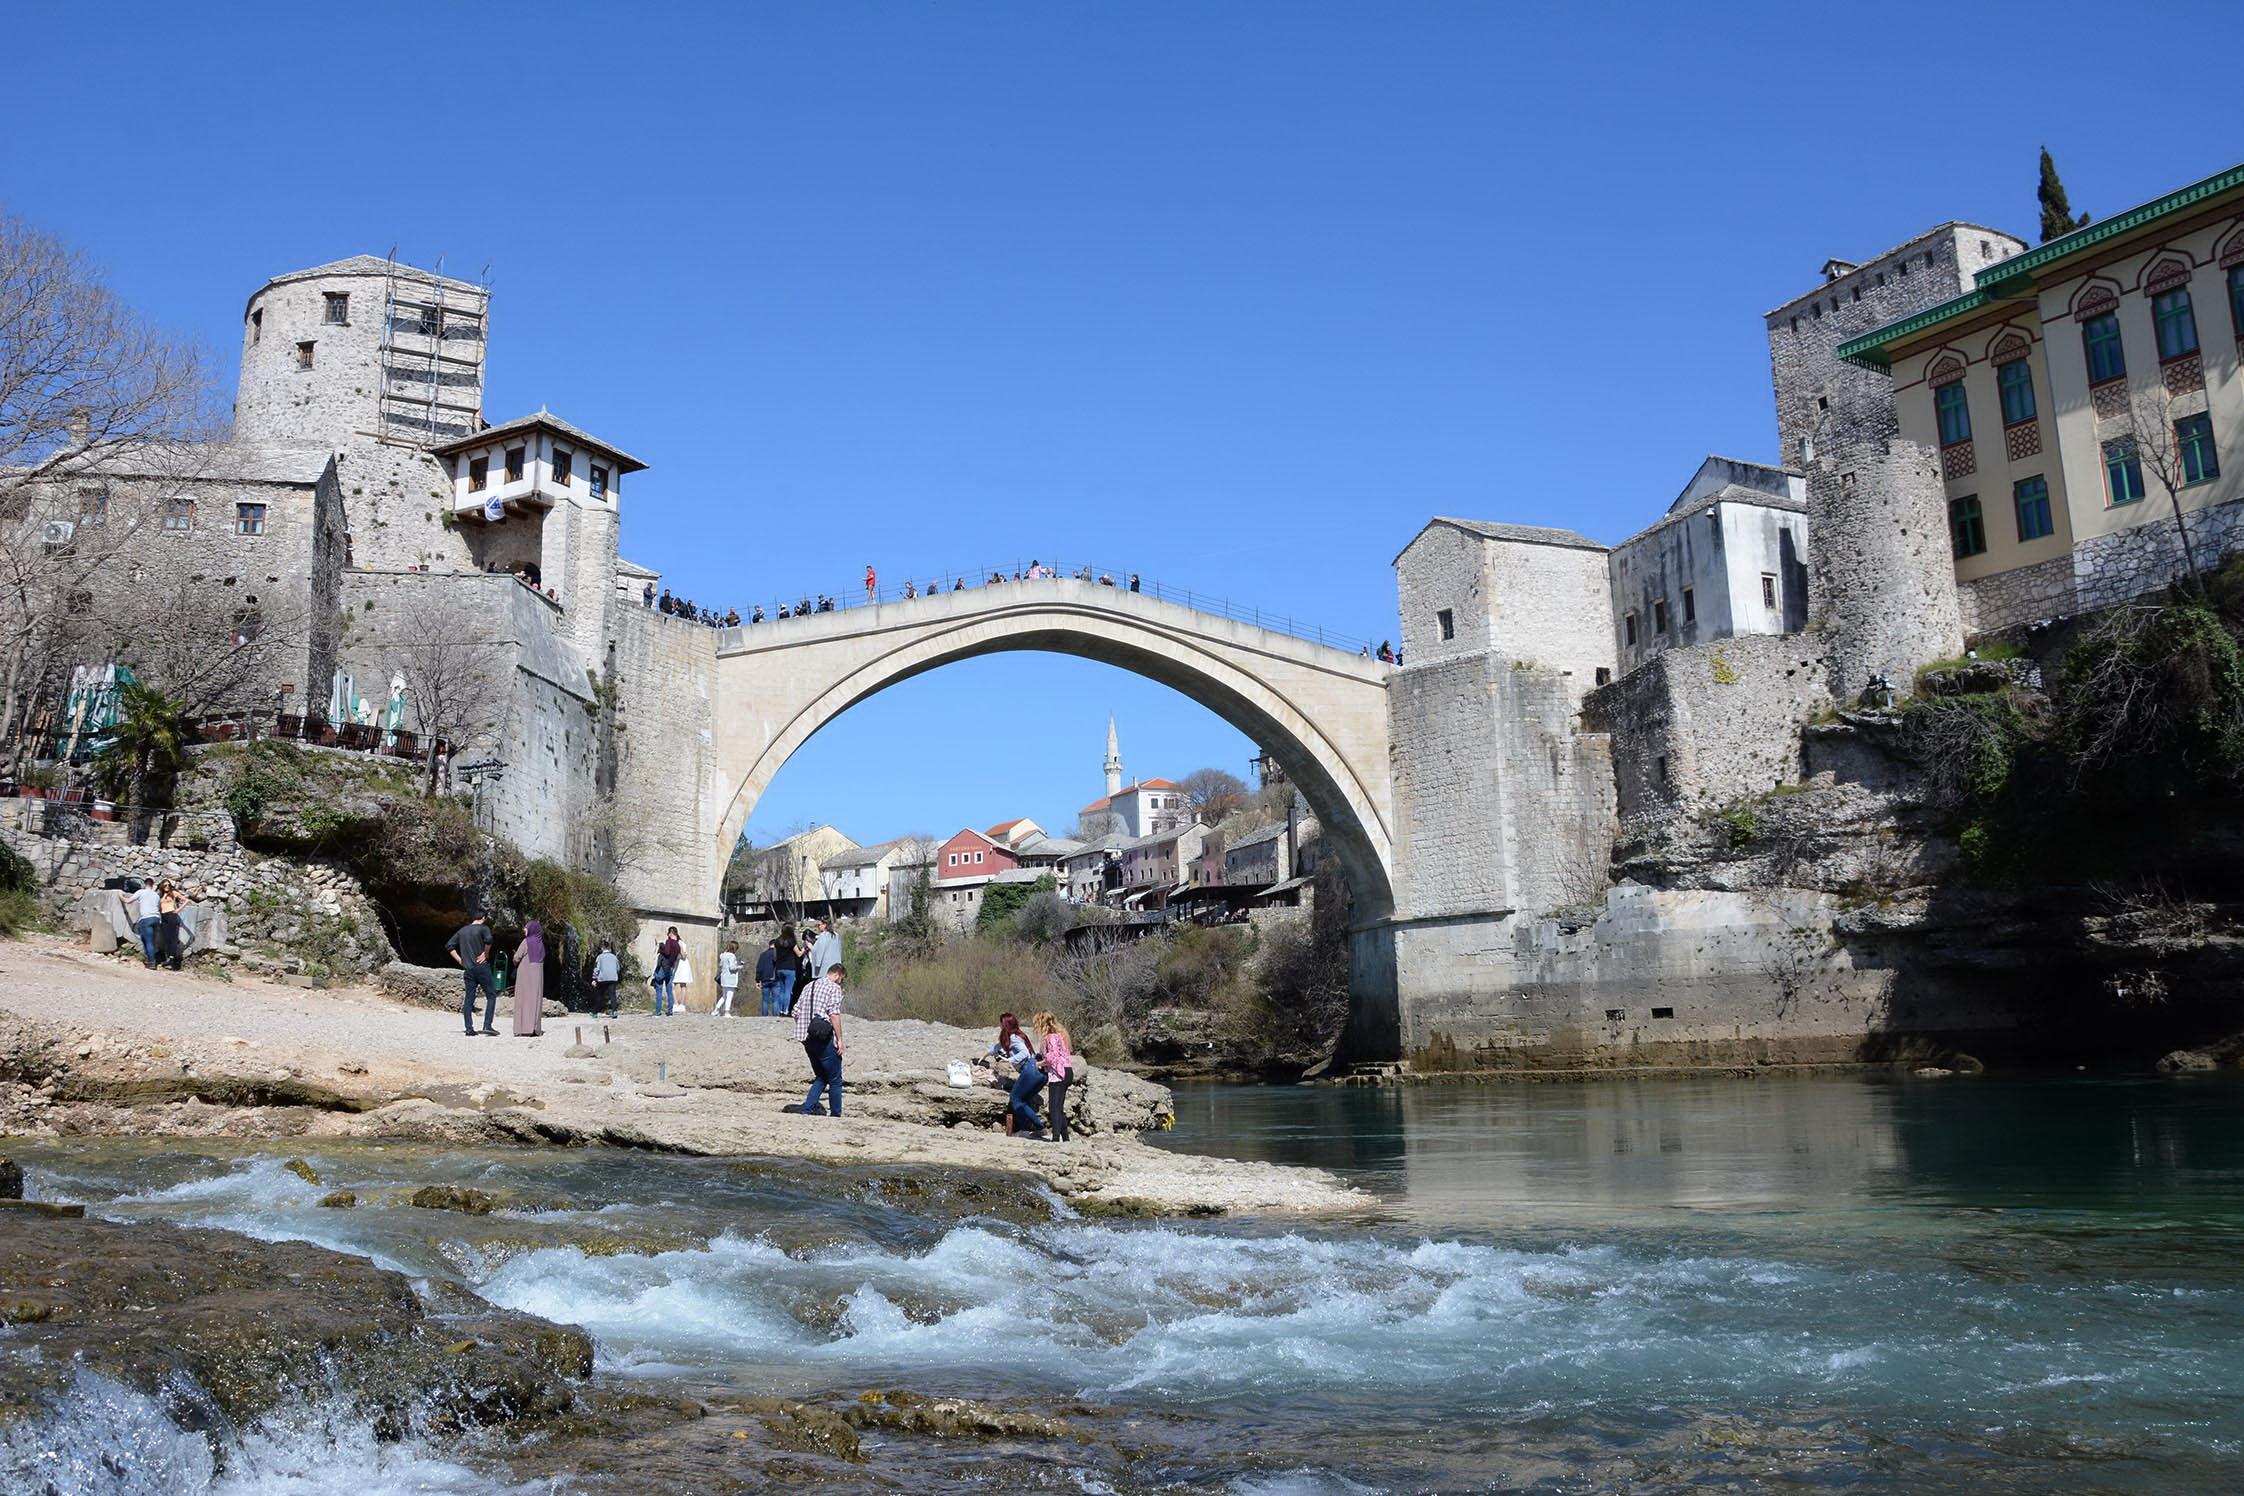 Plato ispod Starog mosta u Mostaru imat će novo ruho